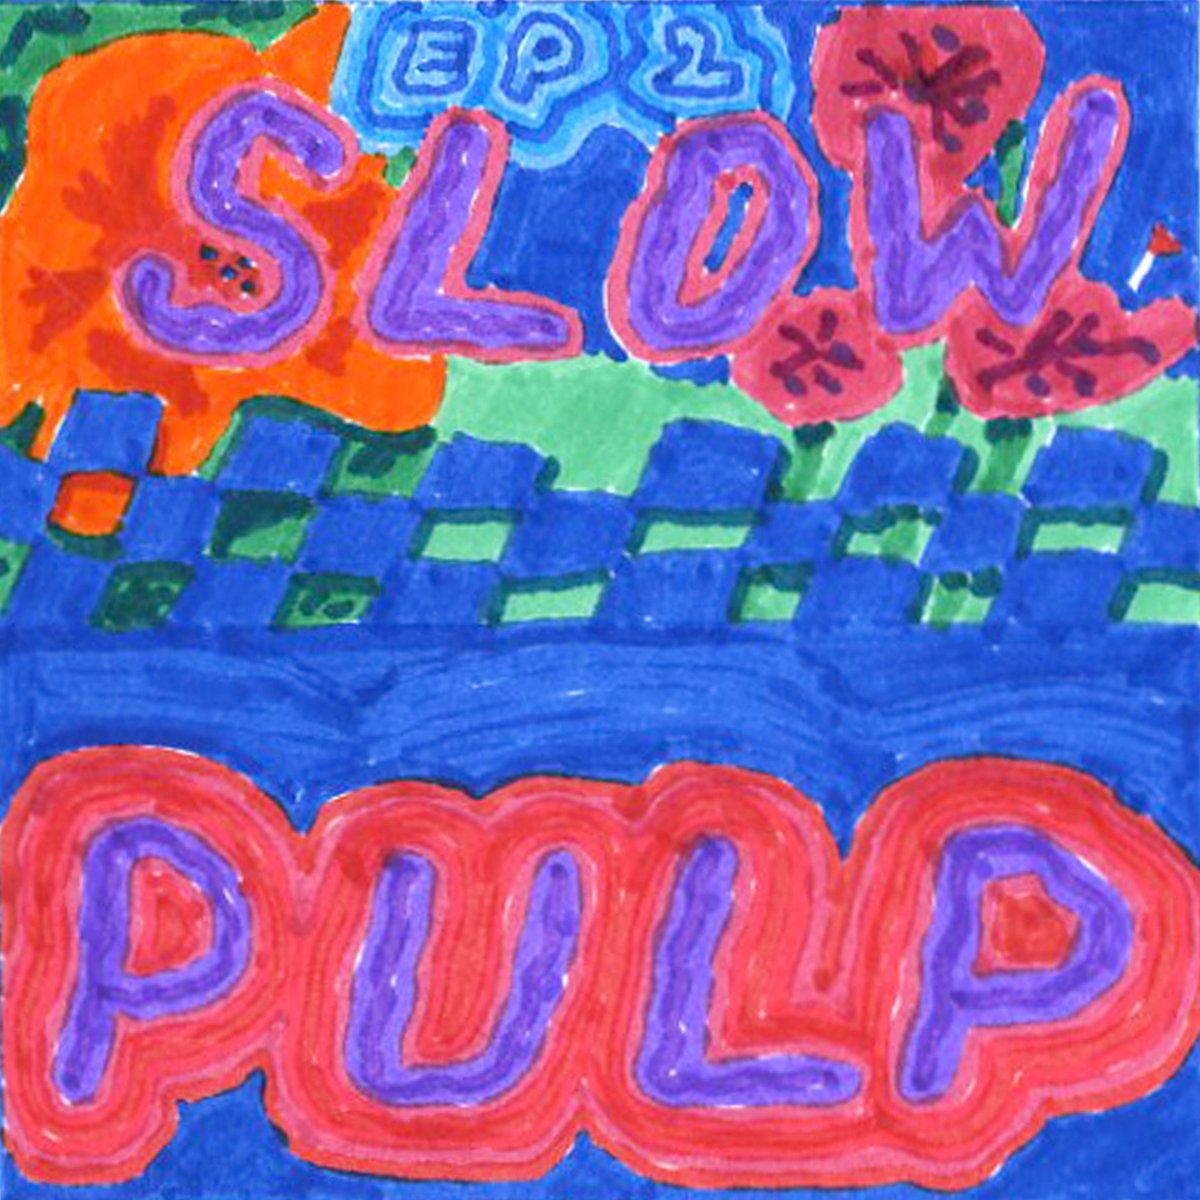 Slow Pulp – “Preoccupied”